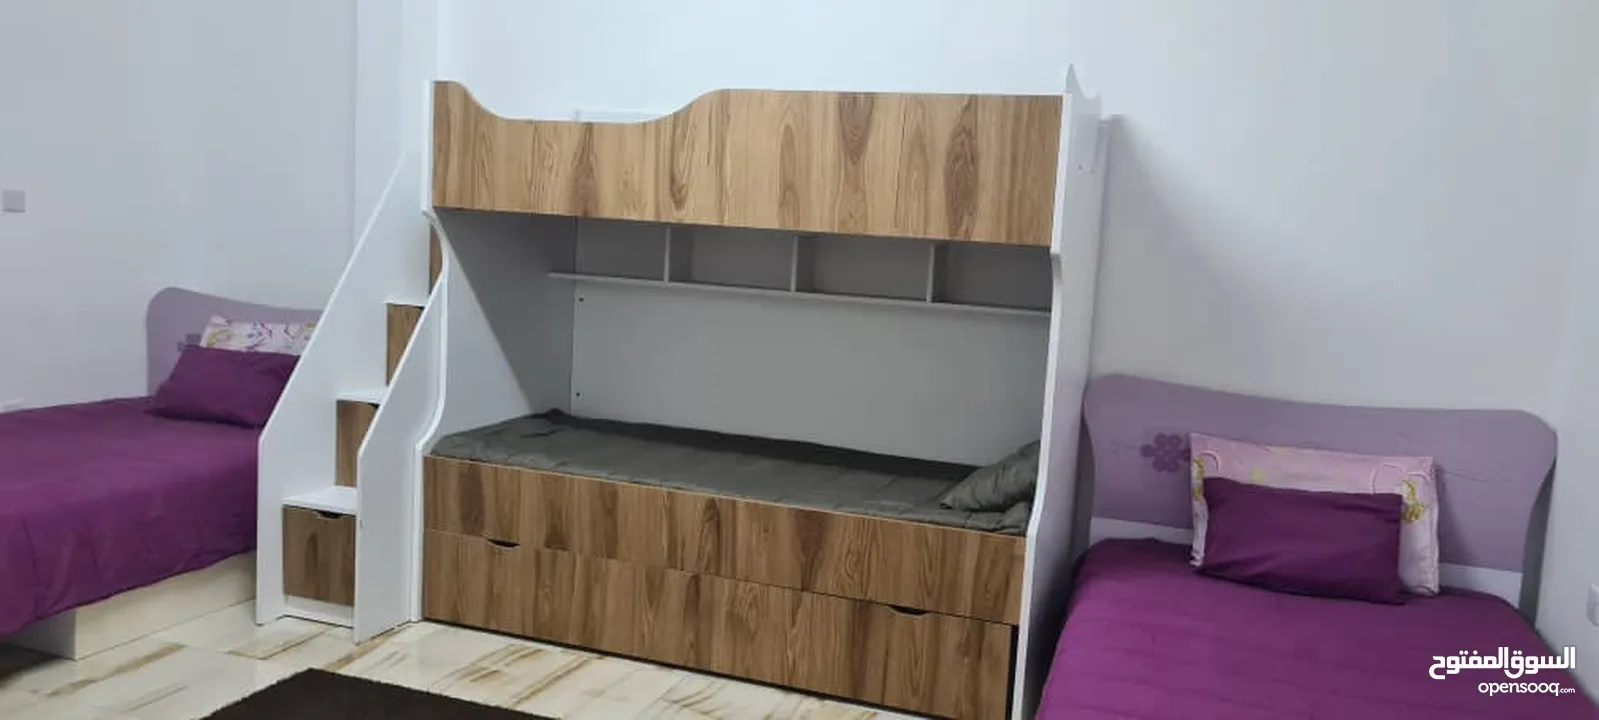 للبيع غرفة نوم اطفال مستعملة